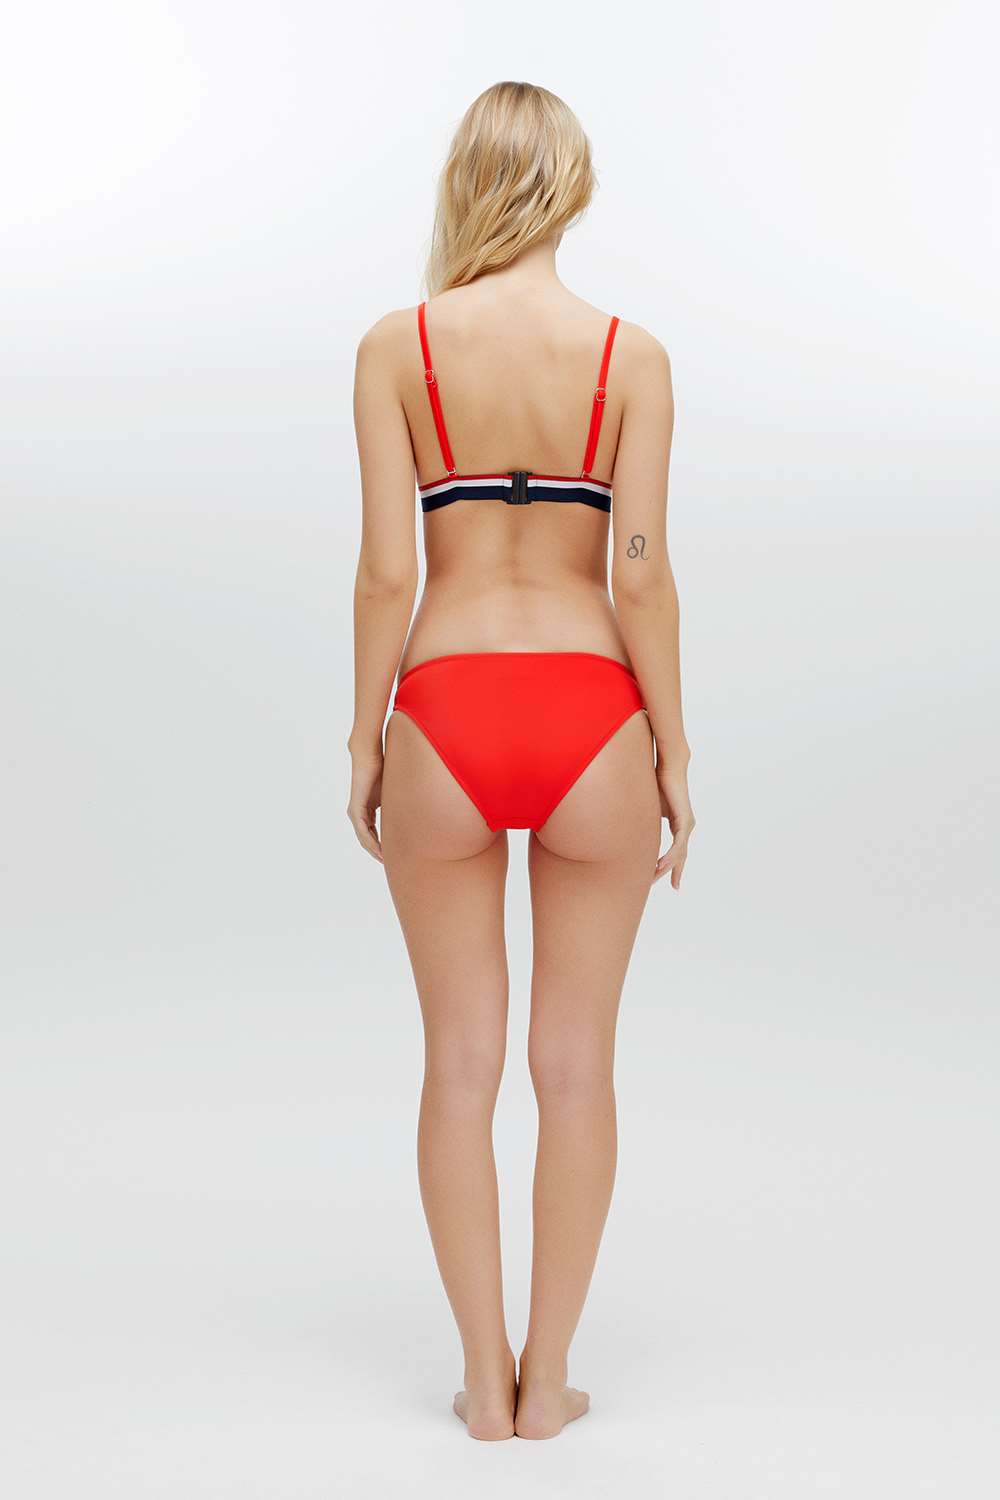 U.S. Polo Assn. Kadın Kırmızı Bikini Takım | Modcollection.com.tr